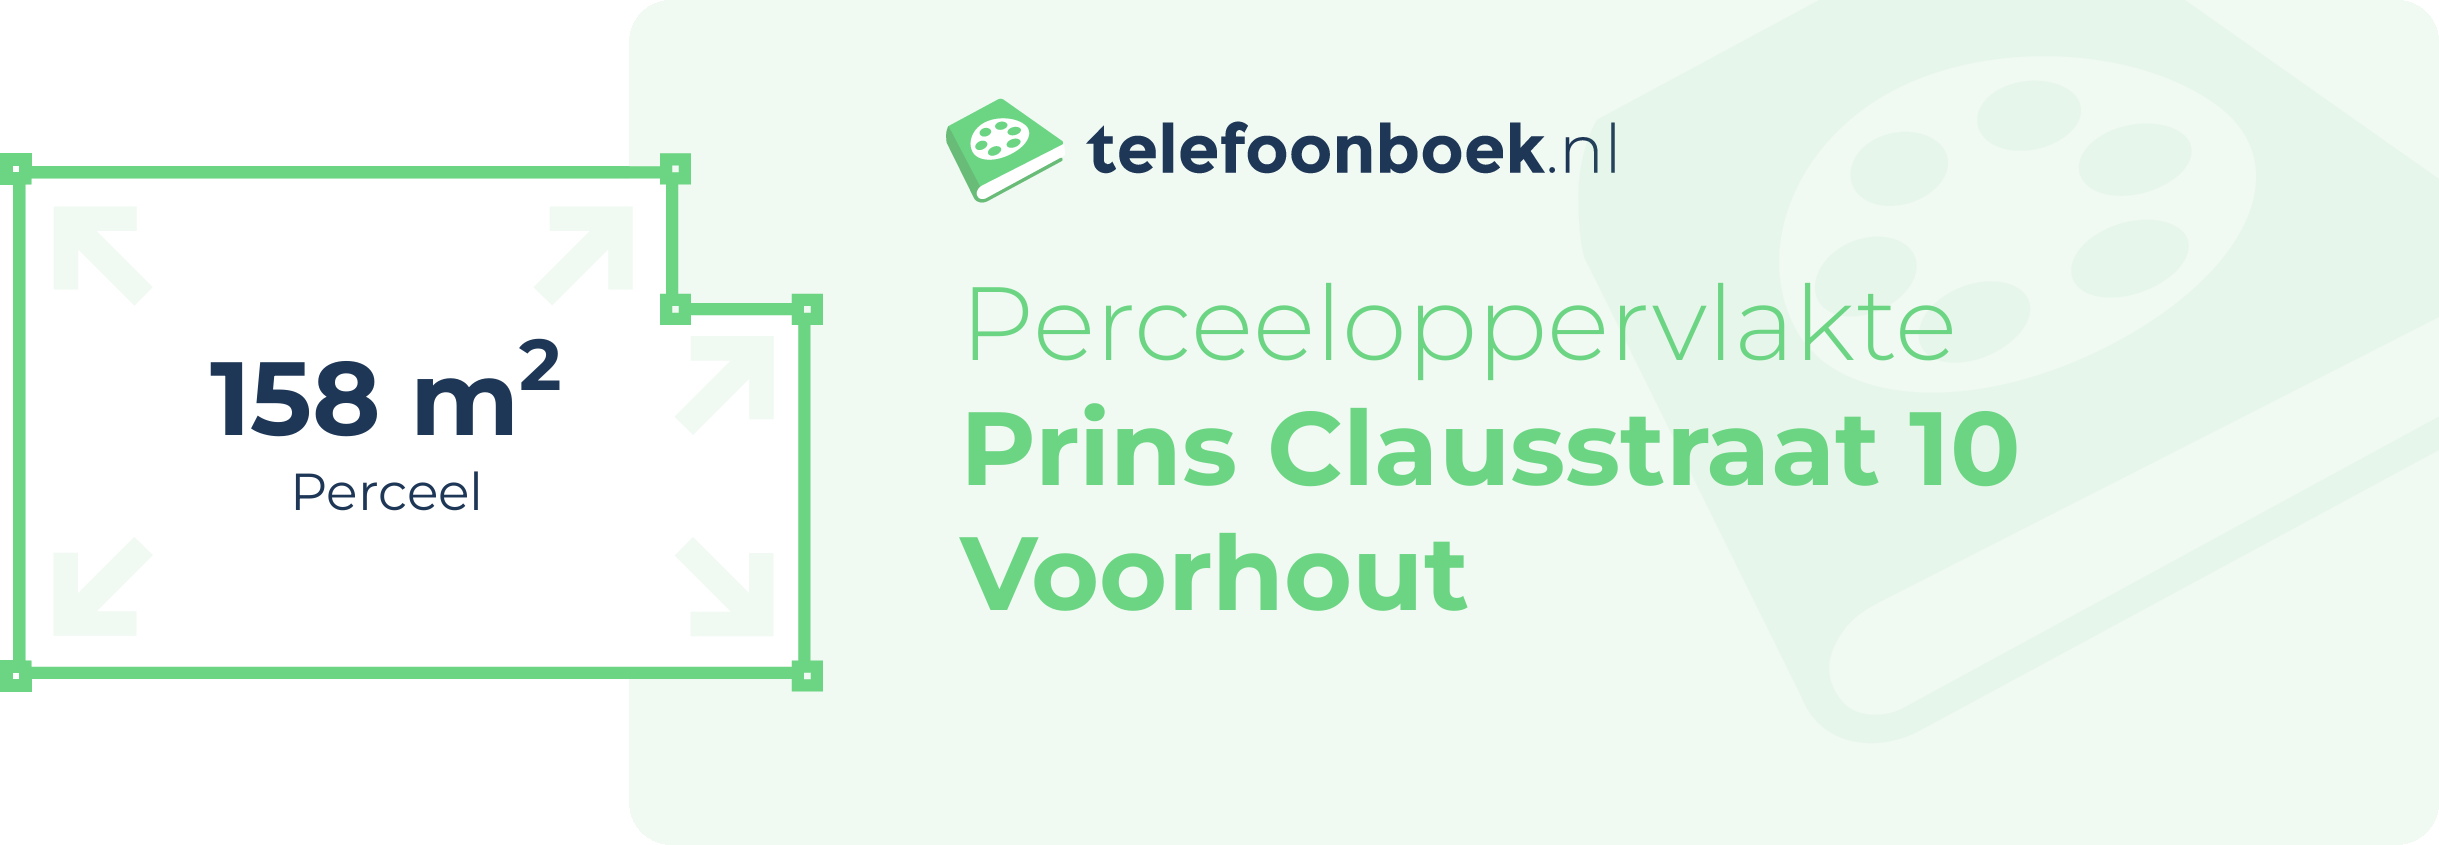 Perceeloppervlakte Prins Clausstraat 10 Voorhout